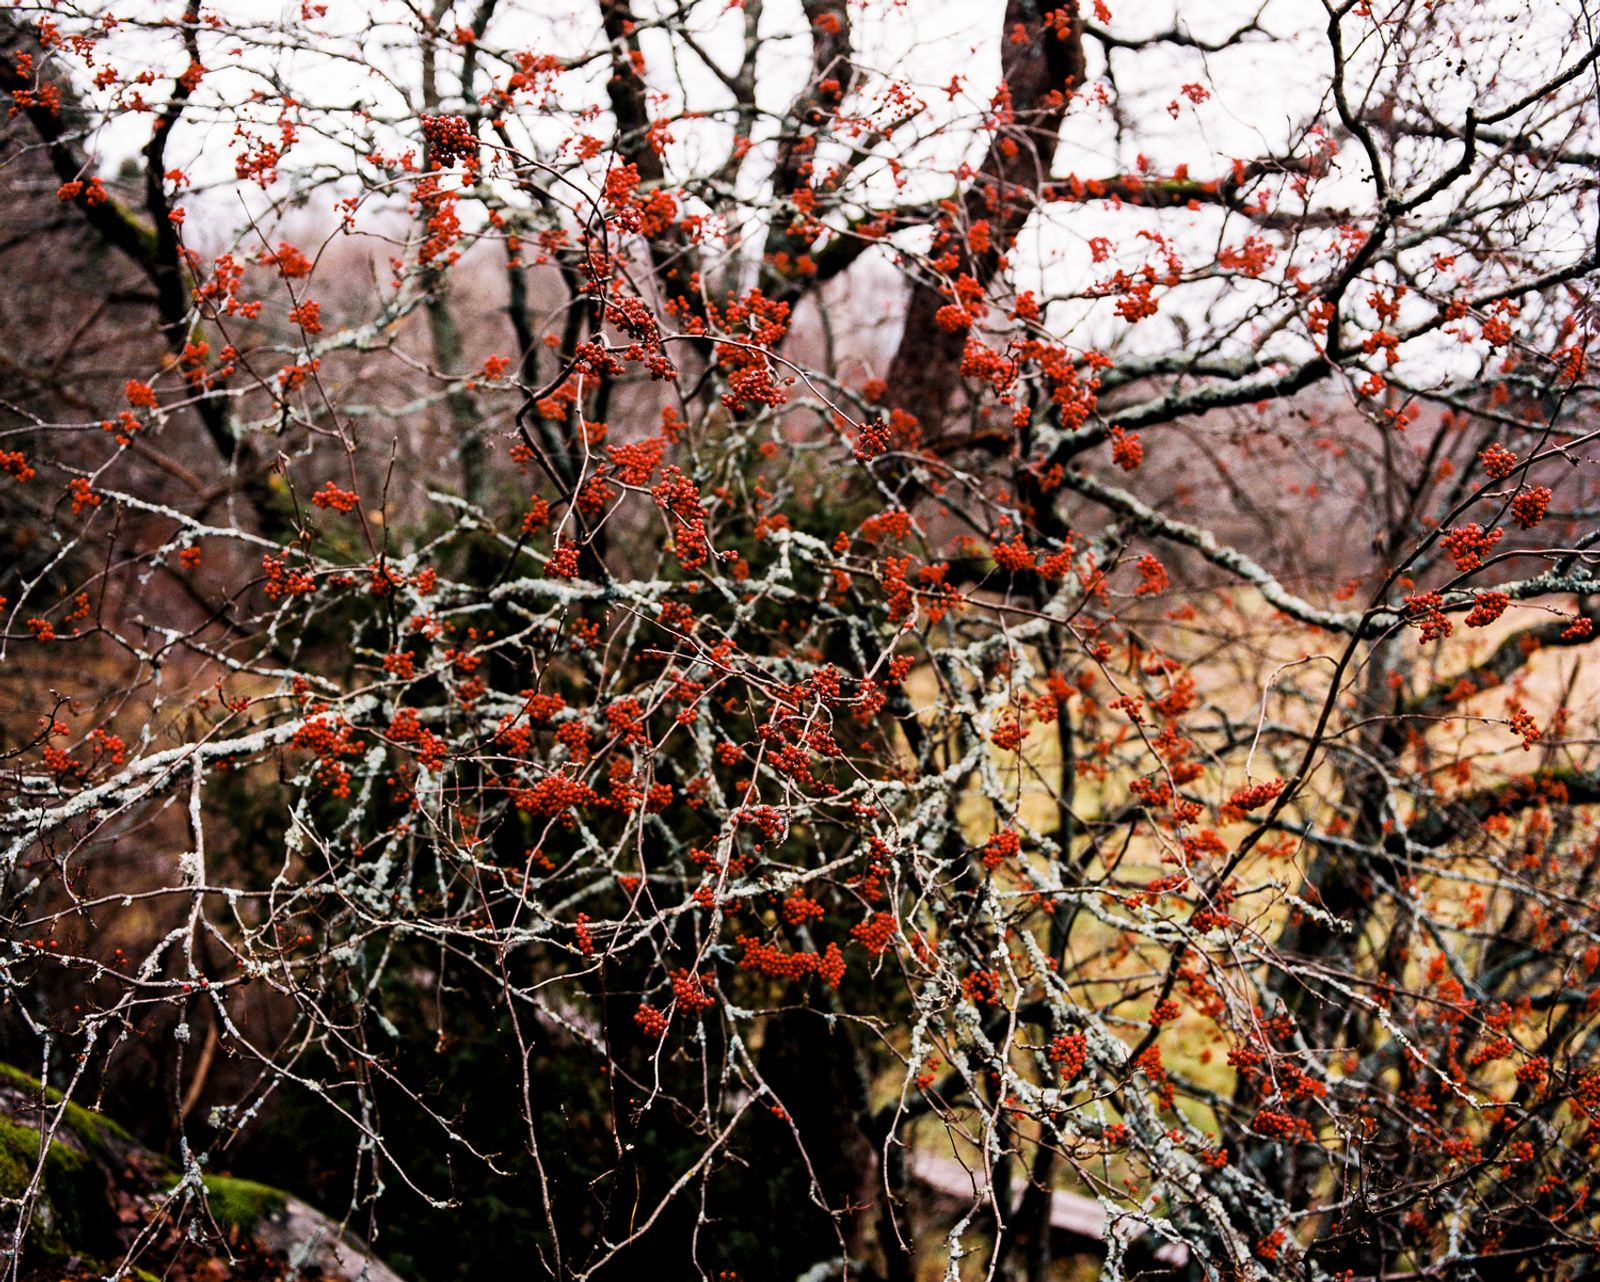 © Sanni Saarinen - The Rowan berries, Turku, October 2017